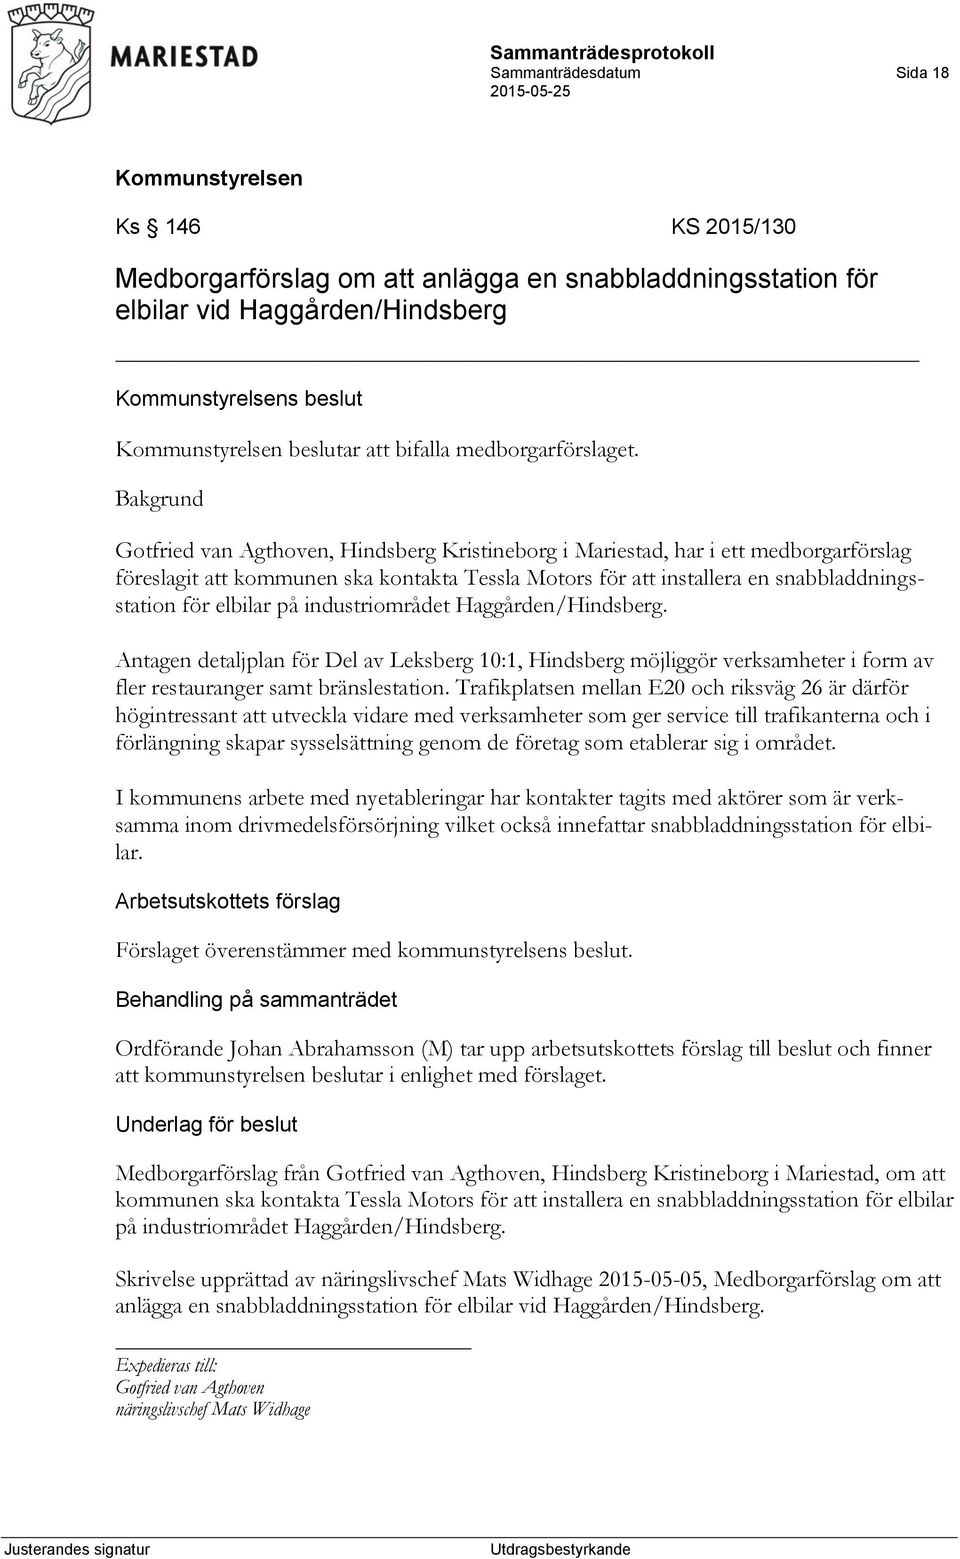 industriområdet Haggården/Hindsberg. Antagen detaljplan för Del av Leksberg 10:1, Hindsberg möjliggör verksamheter i form av fler restauranger samt bränslestation.